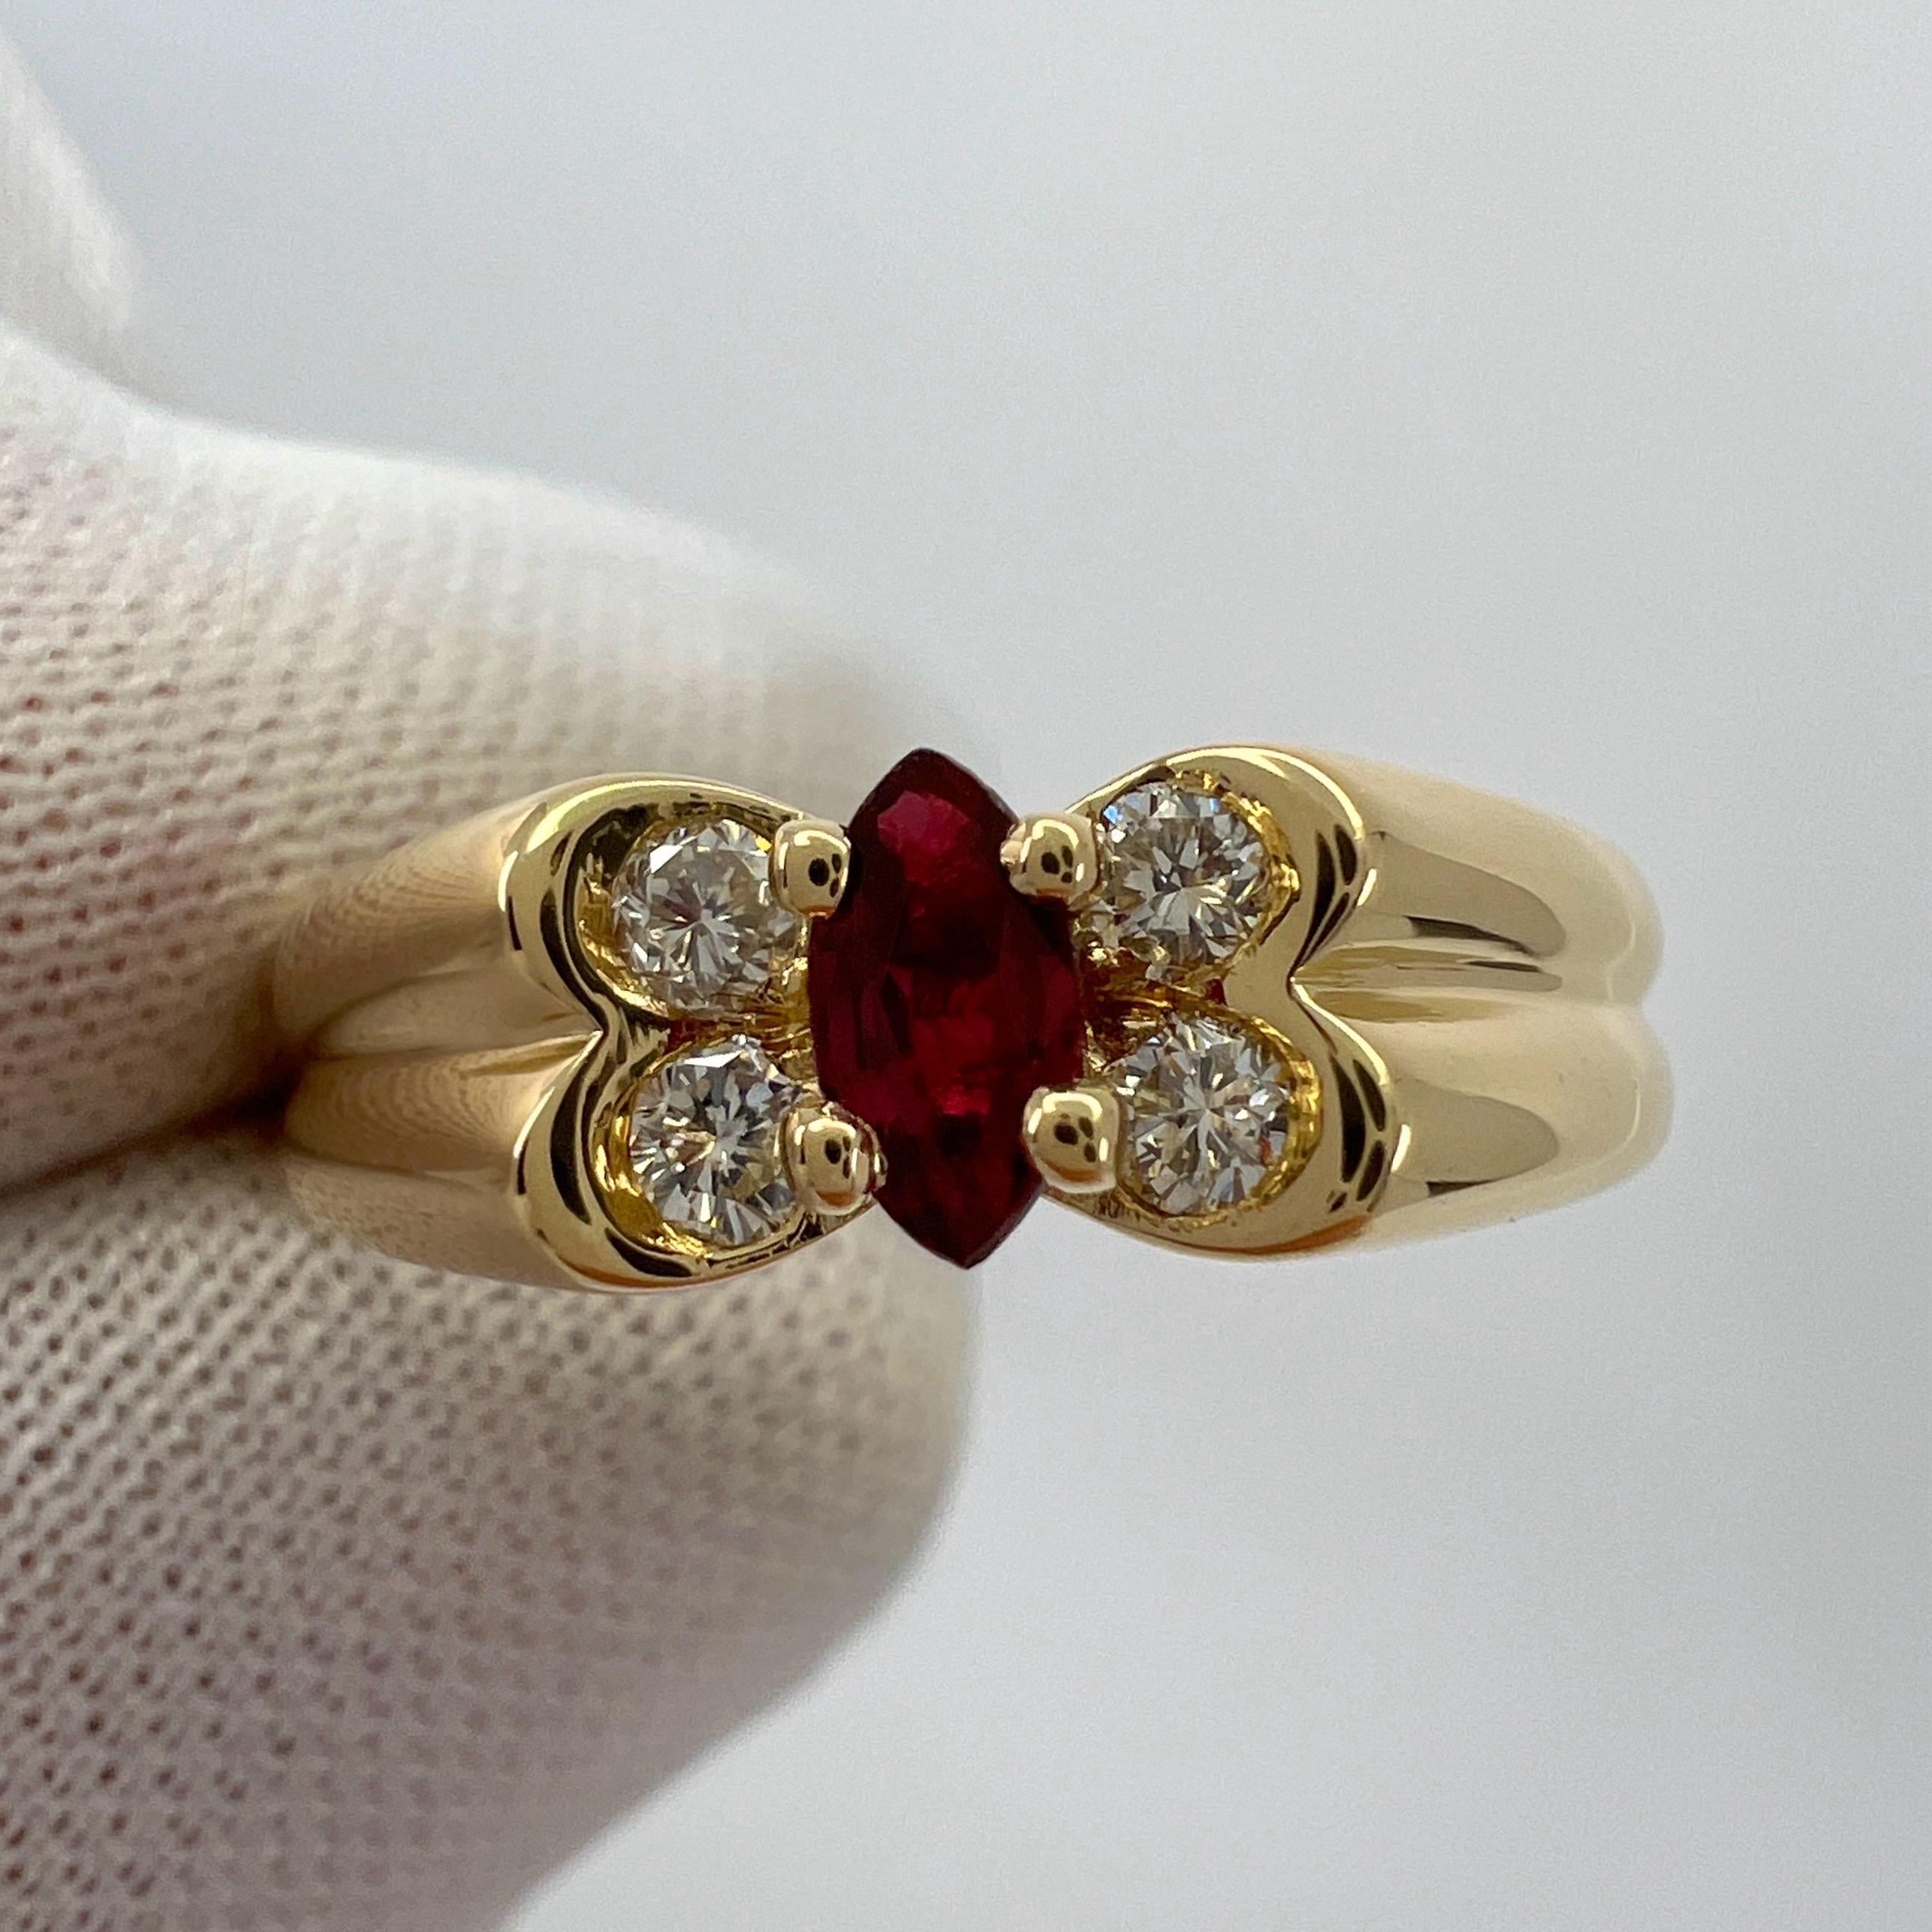 Vintage Van Cleef & Arpels Fein Rubin und Diamant 18k Gelbgold Ring.

Ein atemberaubender Vintage-Ring mit einem einzigartigen Design, das typisch für Van Cleef & Arpels ist. Er ist mit einem schönen roten Rubin im Marquise-Schliff besetzt, der